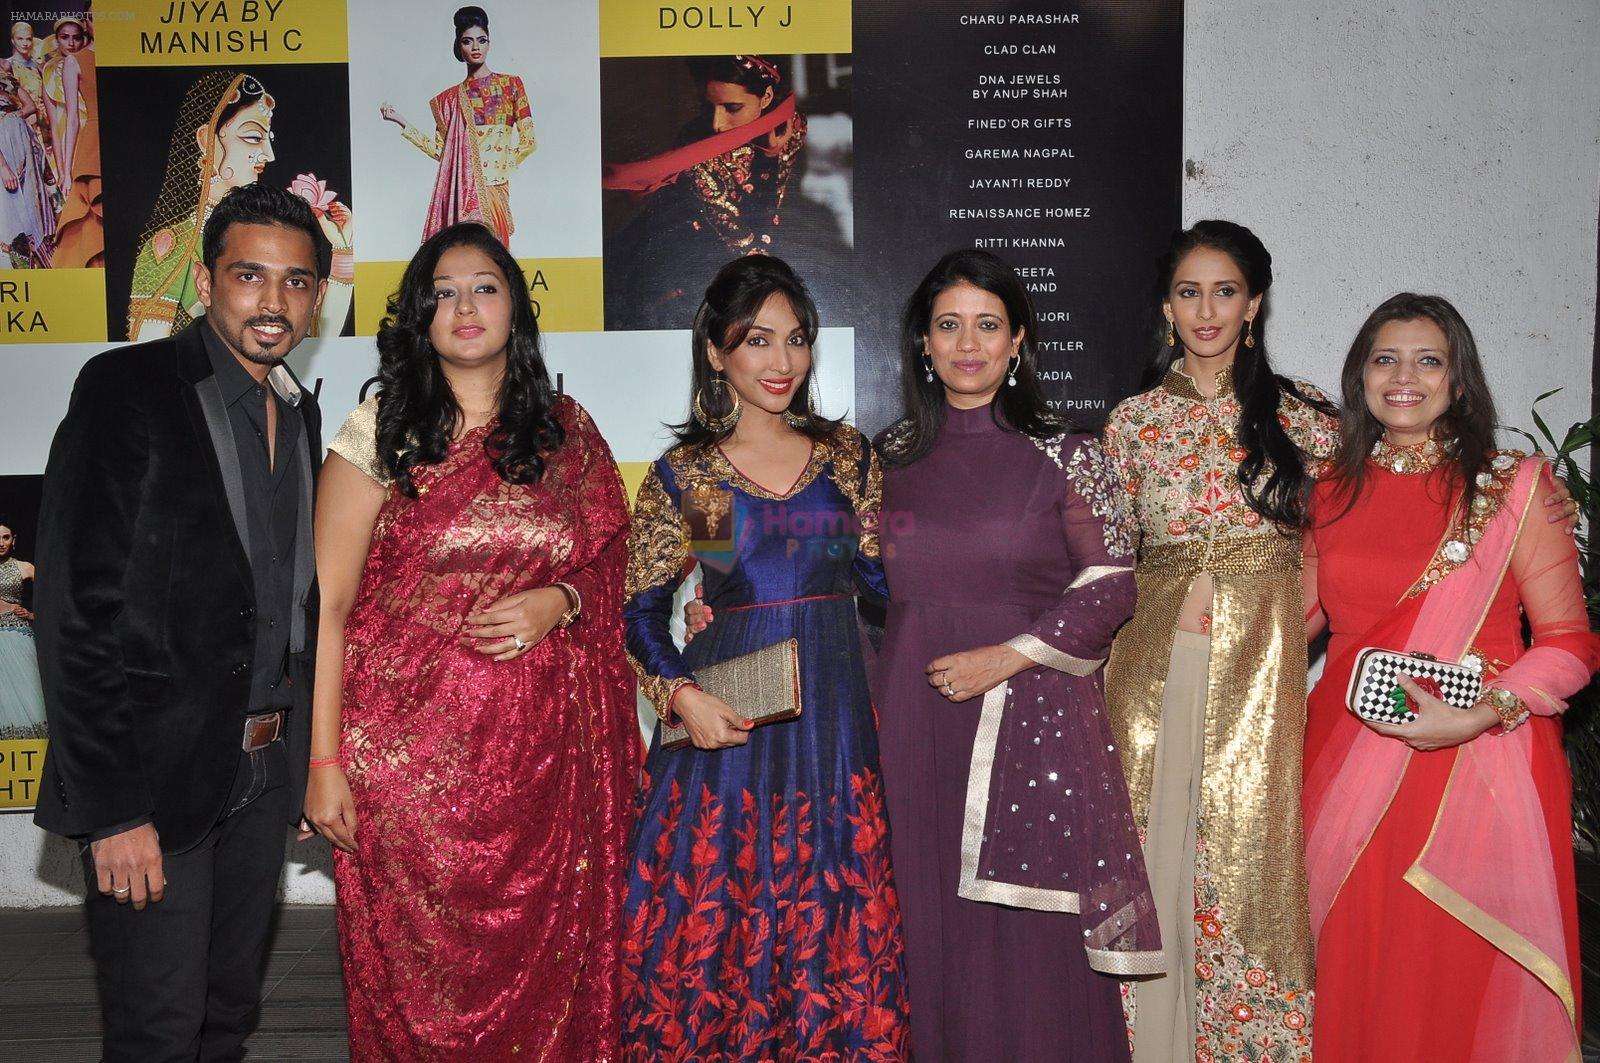 Mouli Ganguly, Chahat Khanna, Kamalika Guha Thakurta at dvar on 31st Jan 2015